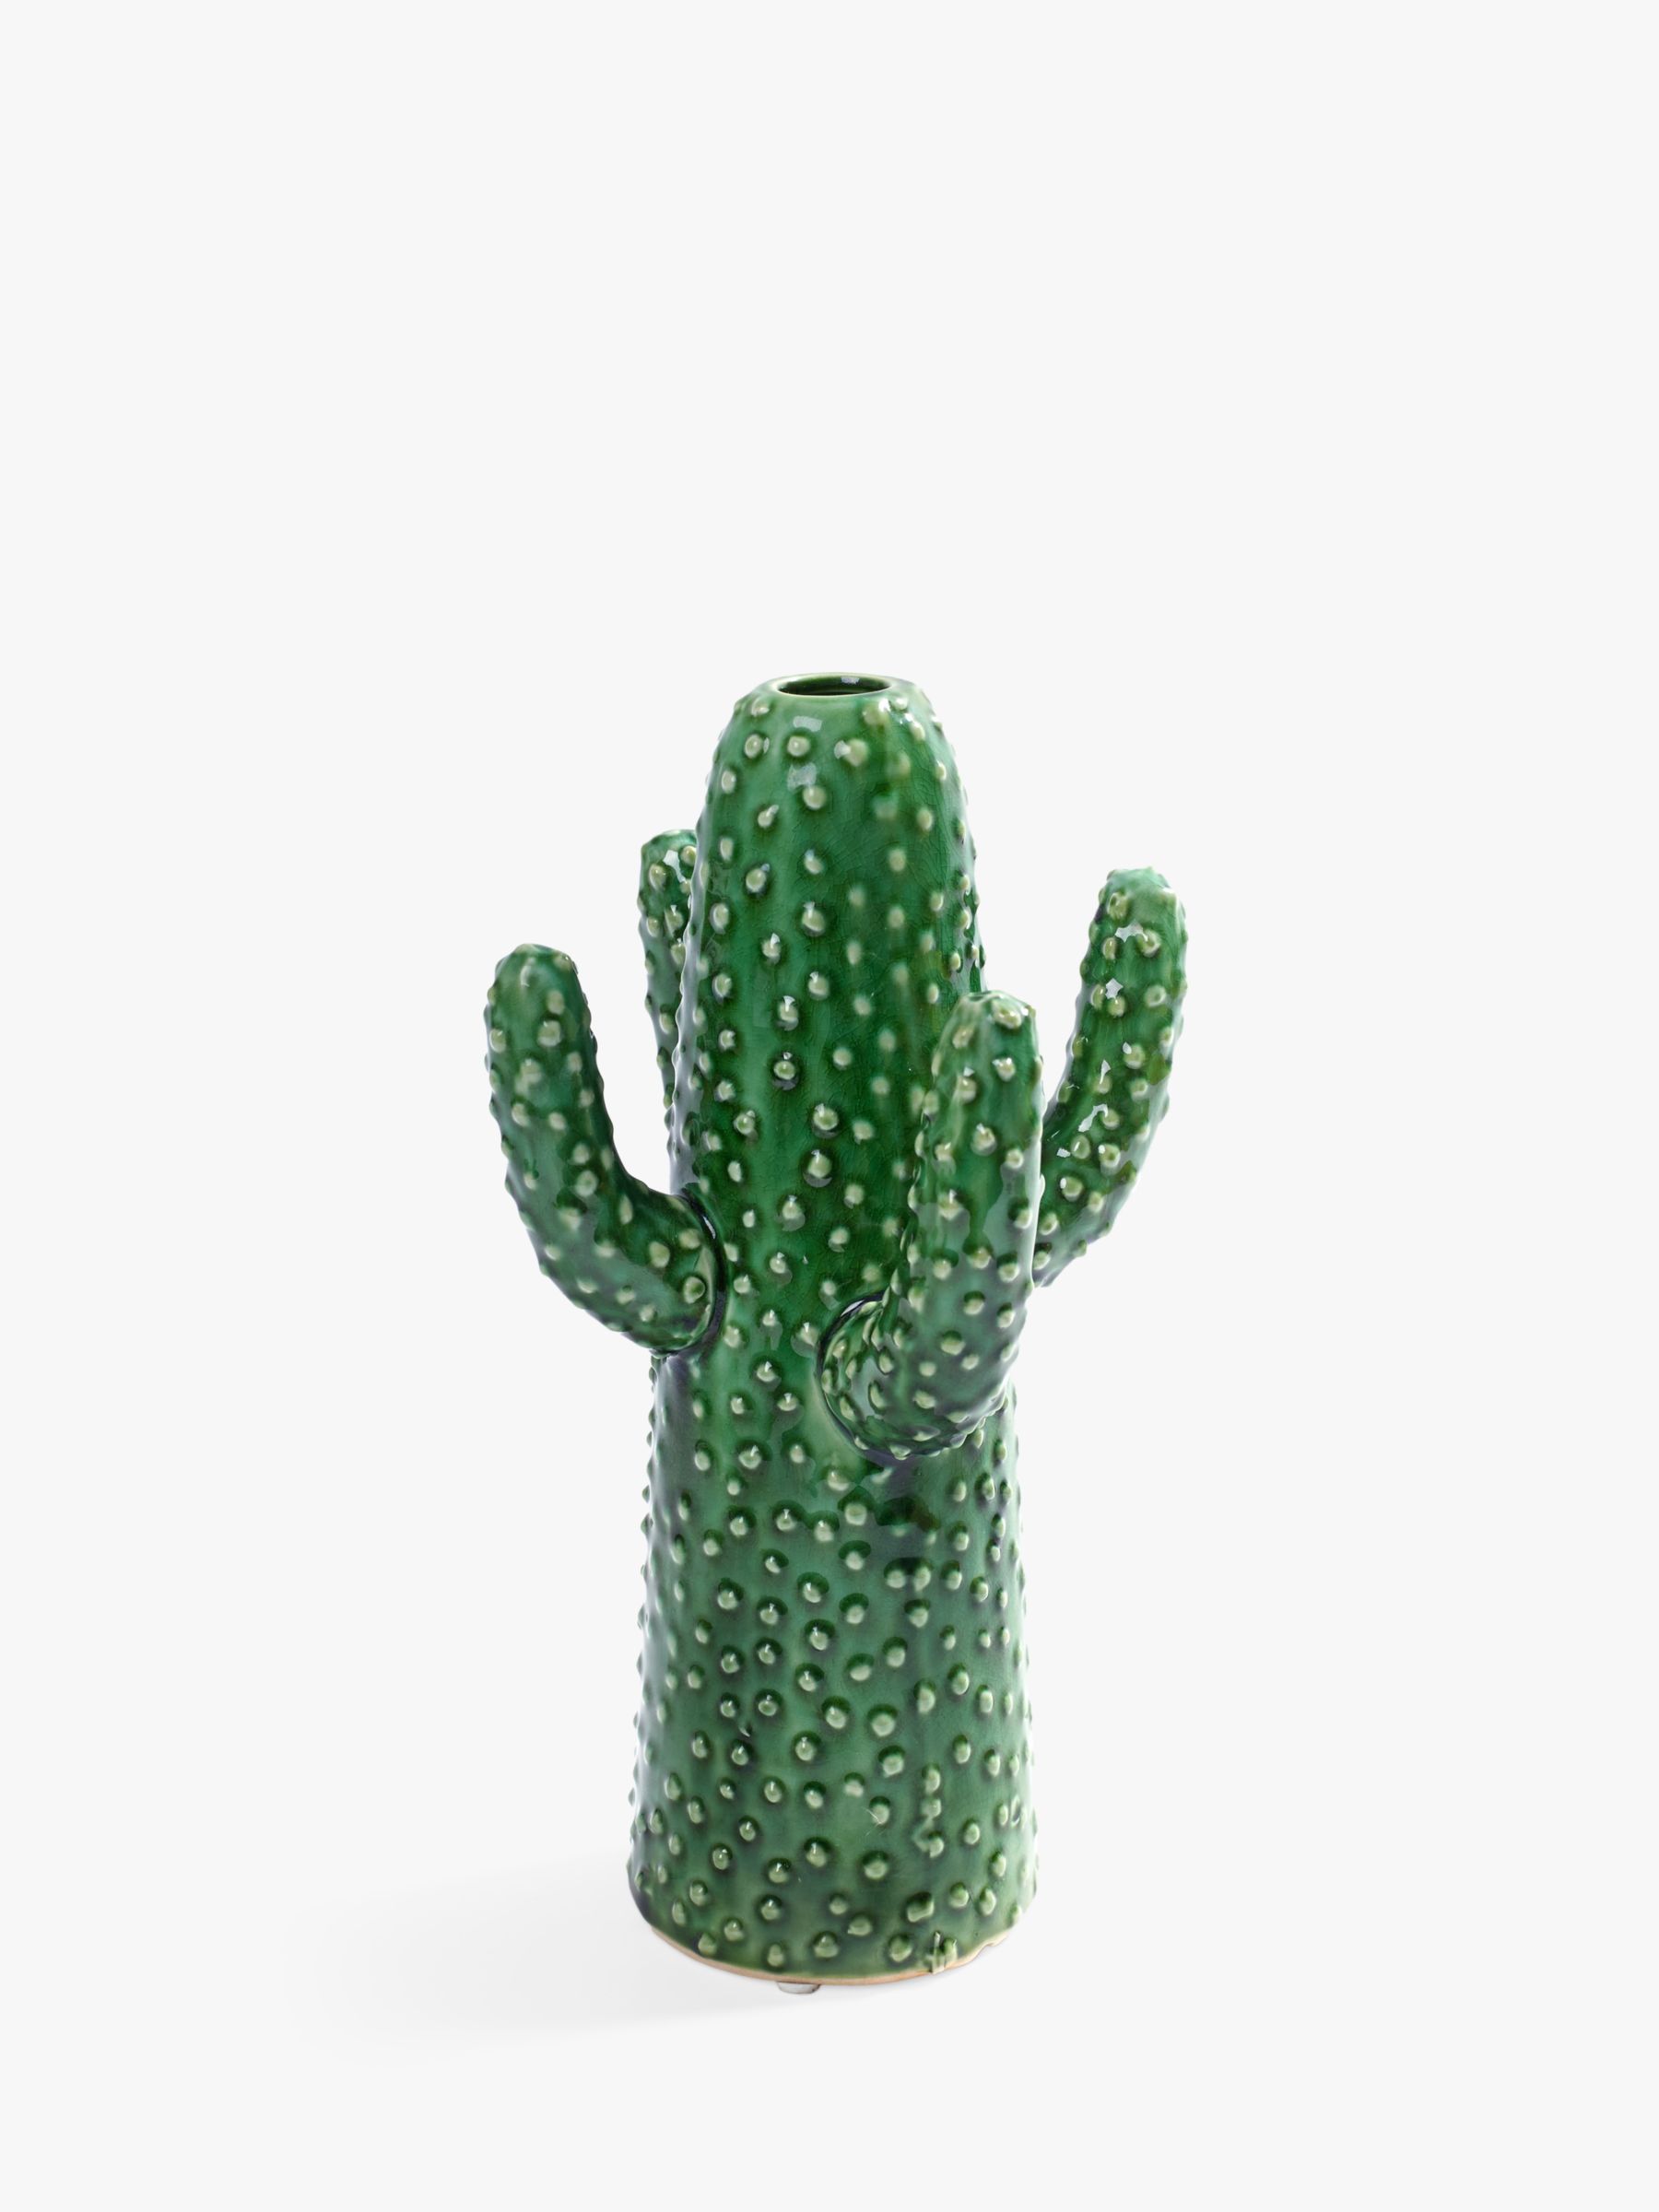 Serax Cactus Vase, Medium